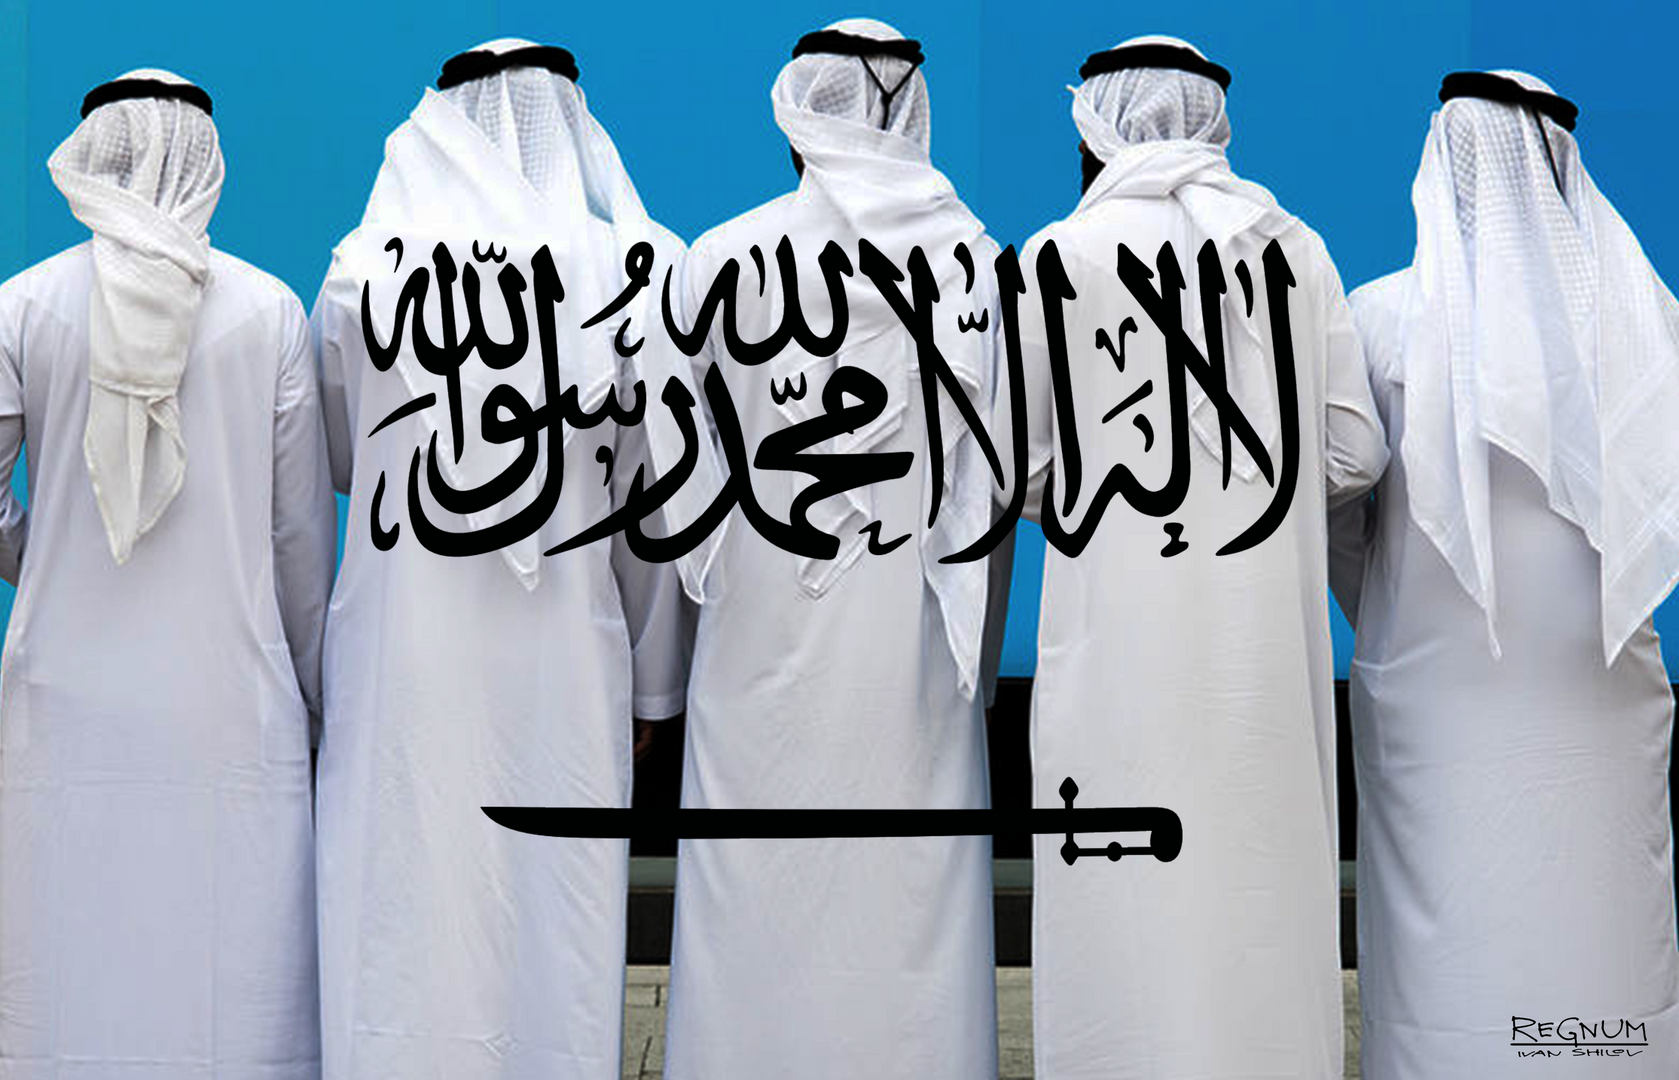 Саудовская Аравия женщины. Исламский экстремизм в Саудовской Аравии. Аравия спонсирует терроризм. Таслим в исламе